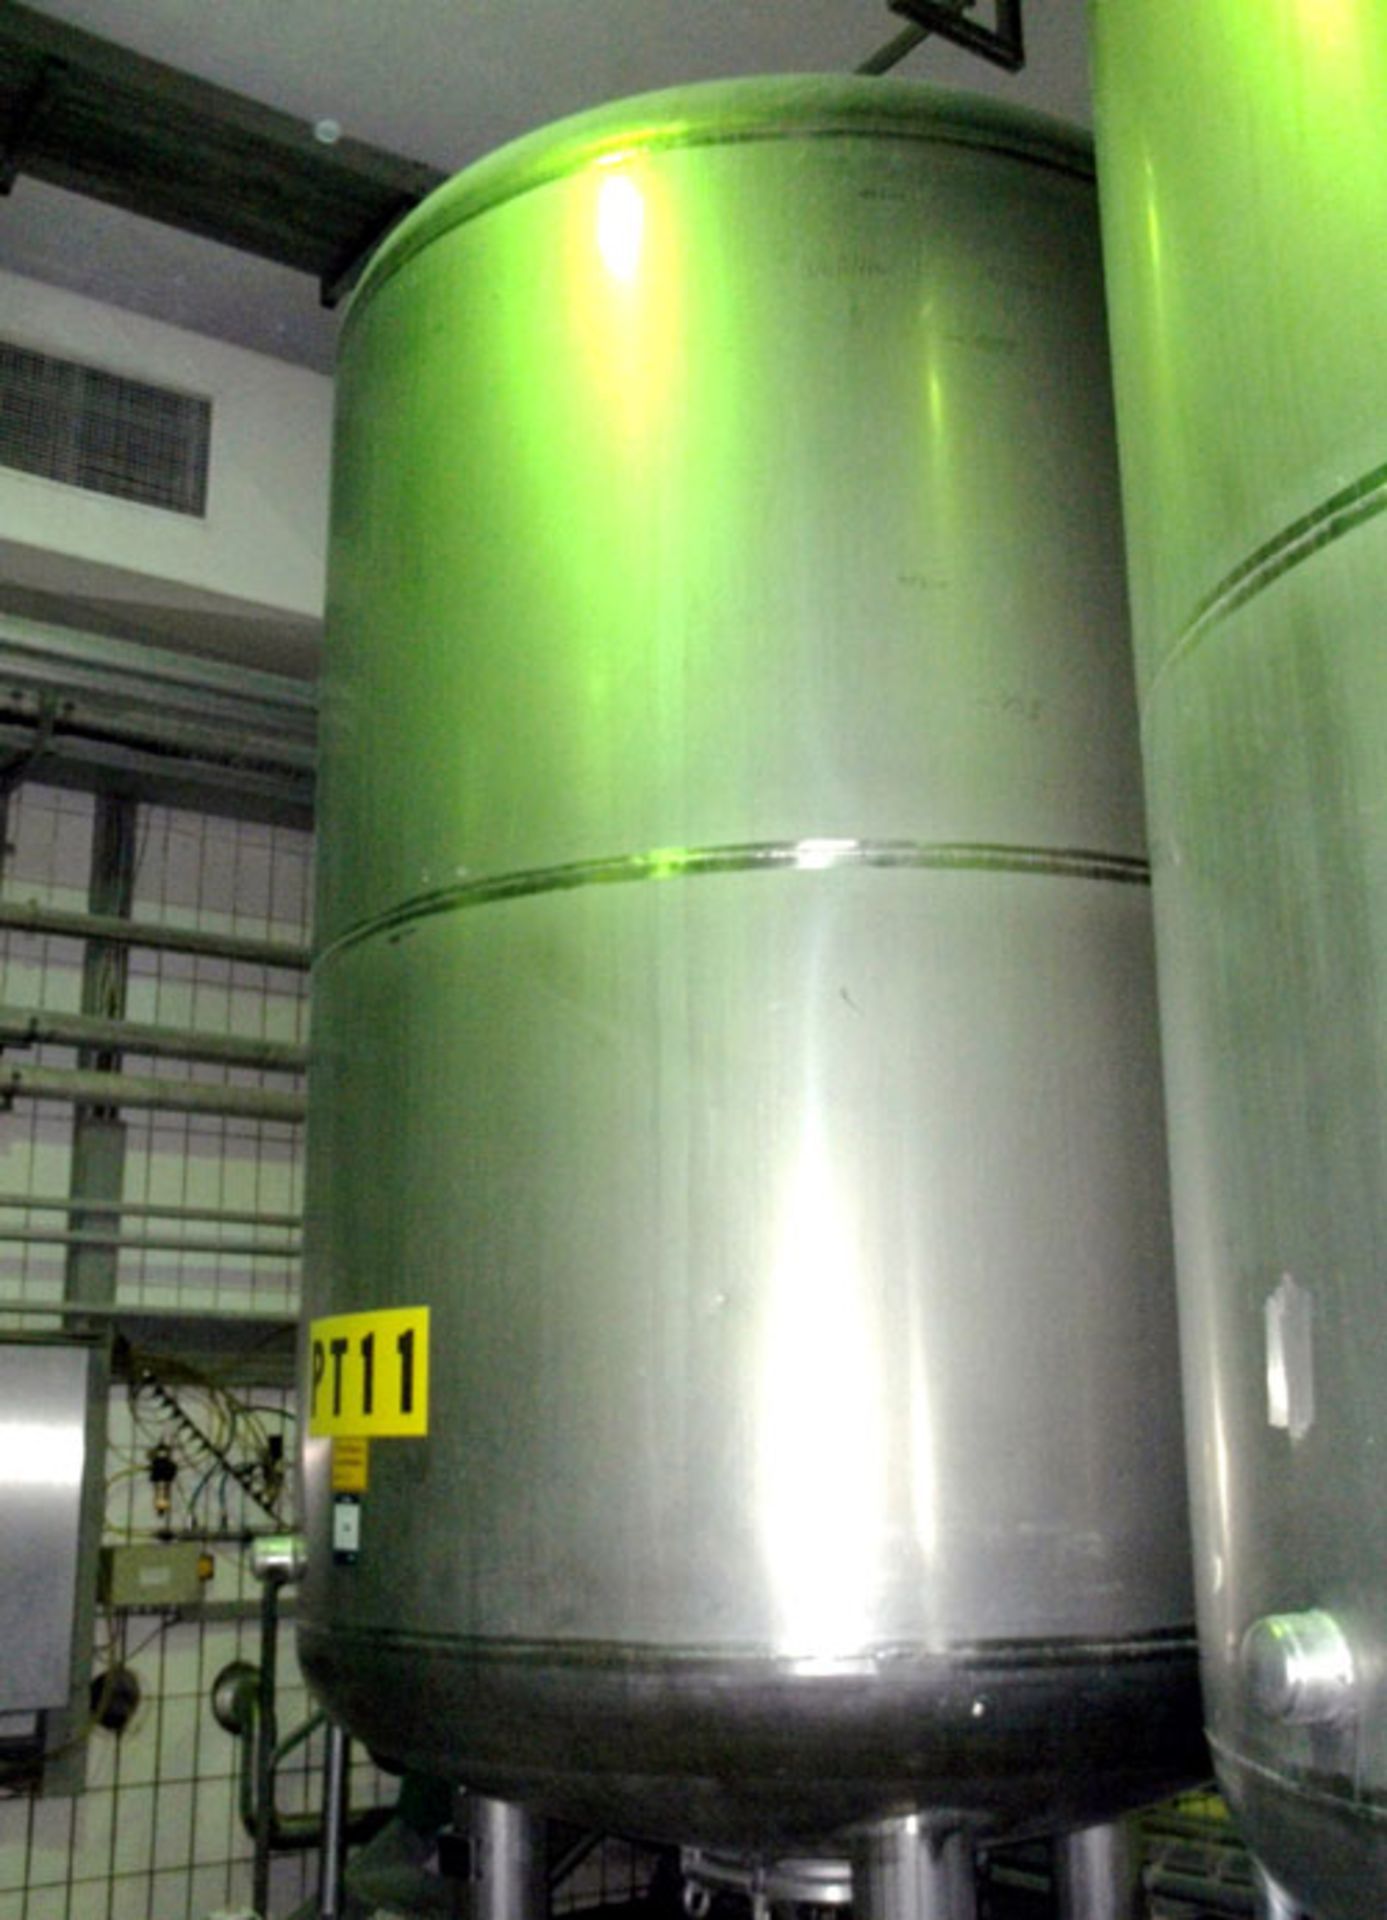 H. Bauer Maschinen-und-Apparatebau stainless steel tank, 3013 gallon (11408 liter) capacity,